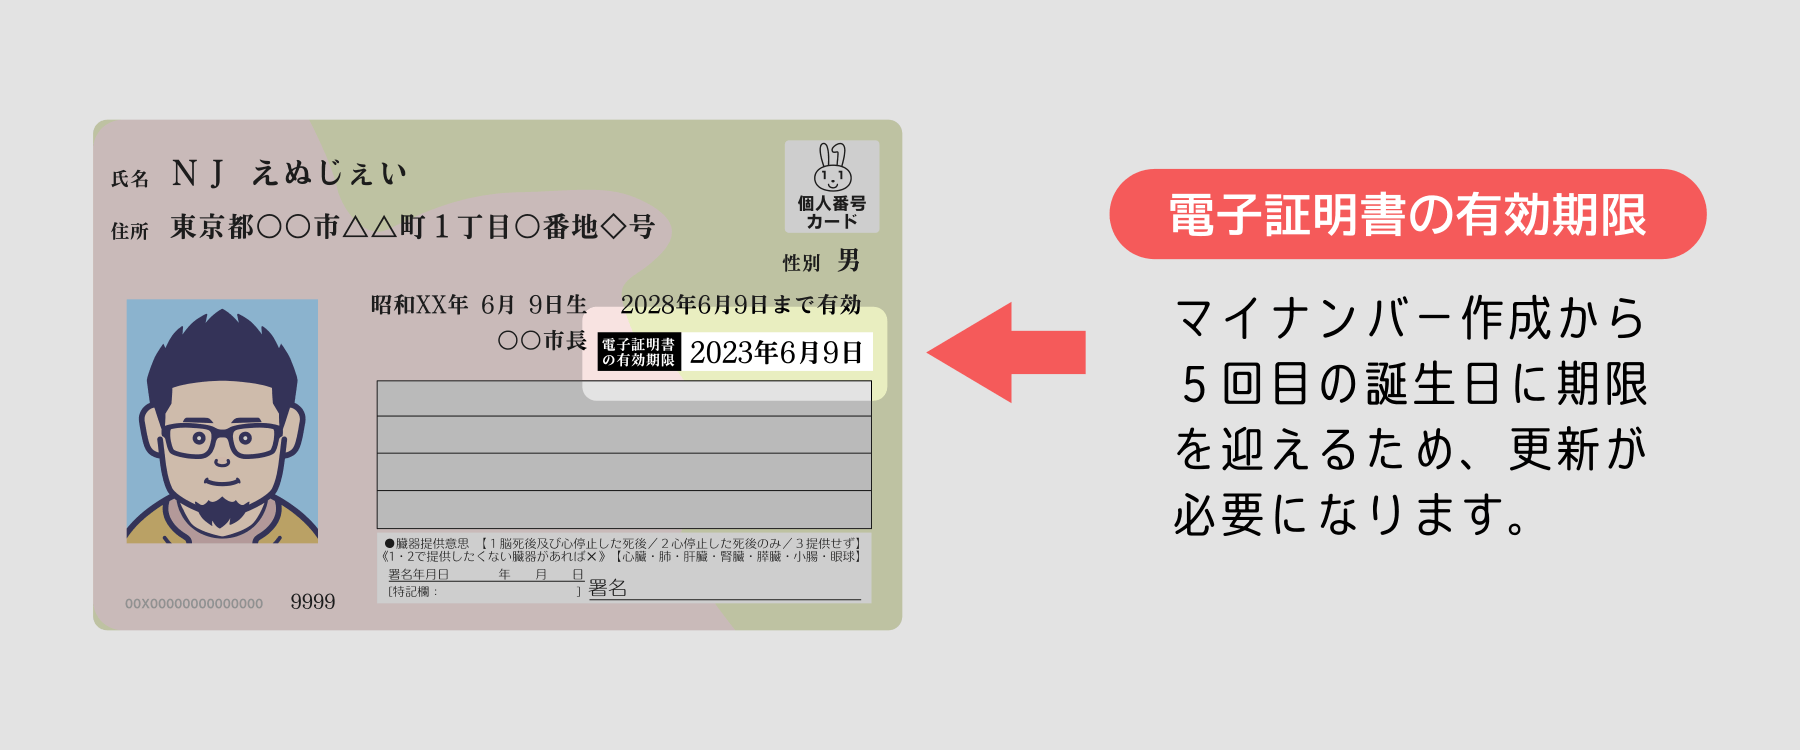 マイナンバーカードにある電子証明書の有効期限